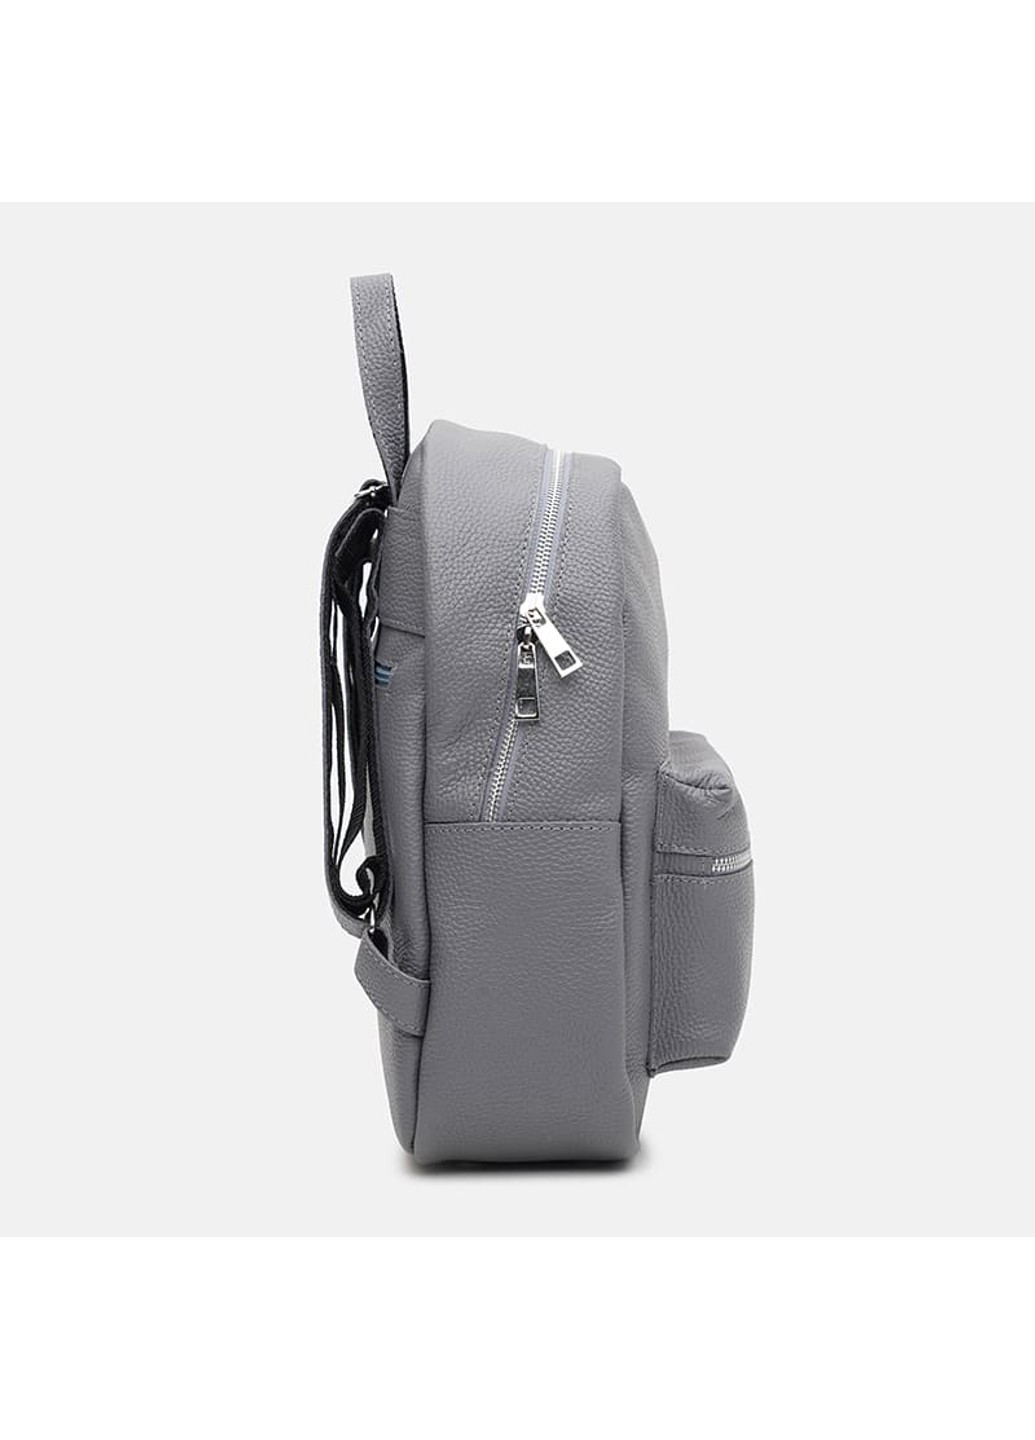 Женский кожаный рюкзак 1l655gr-grey Ricco Grande (266143594)